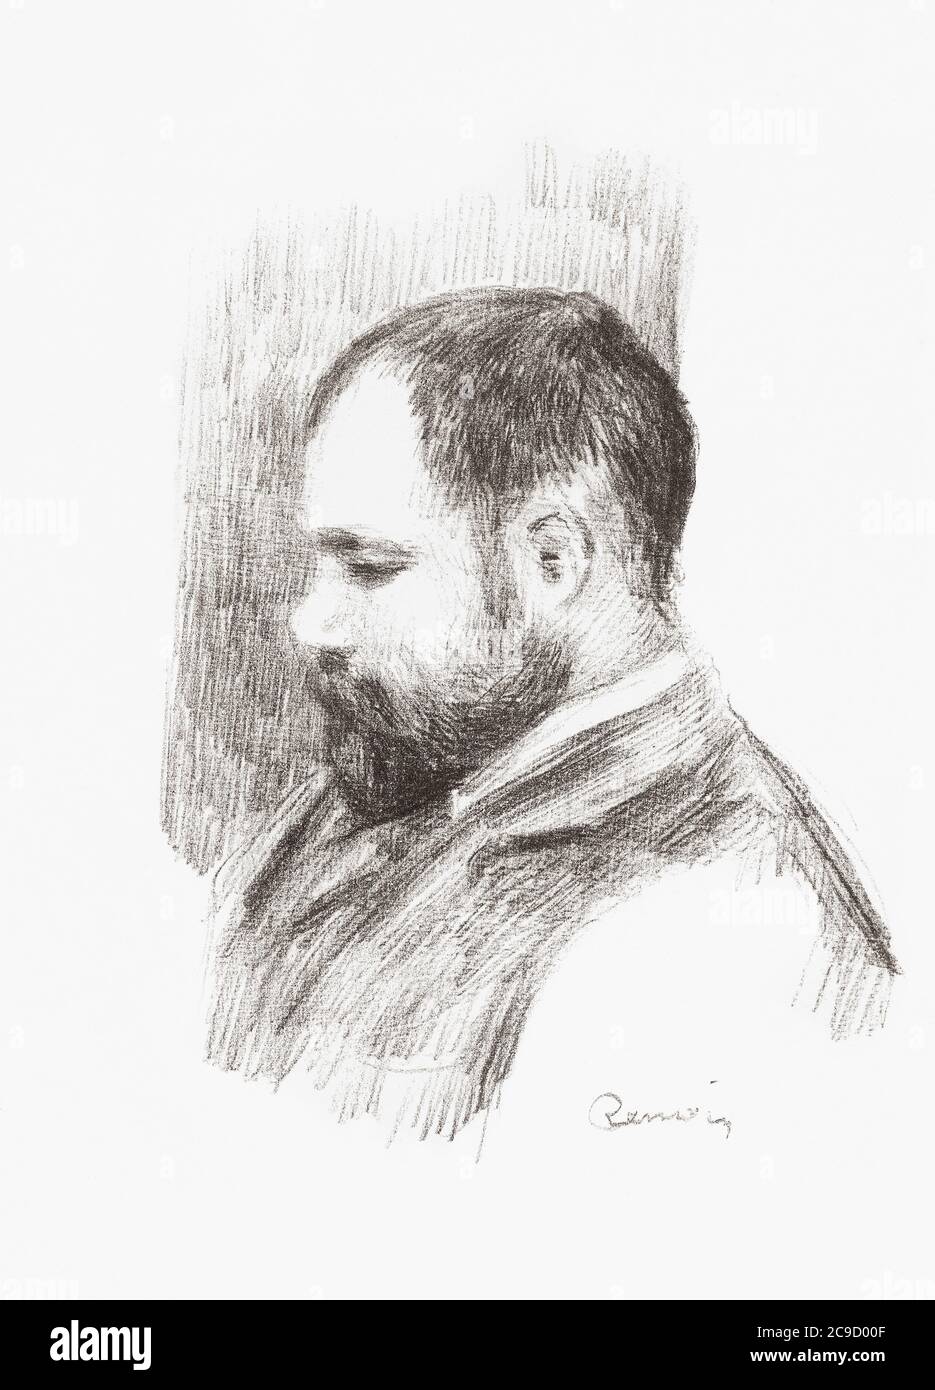 Porträt des französischen Kunsthändlers Ambroise Vollard, 1866 - 1939. Nach einem Druck des frühen 20. Jahrhunderts von Auguste Renoir. Stockfoto